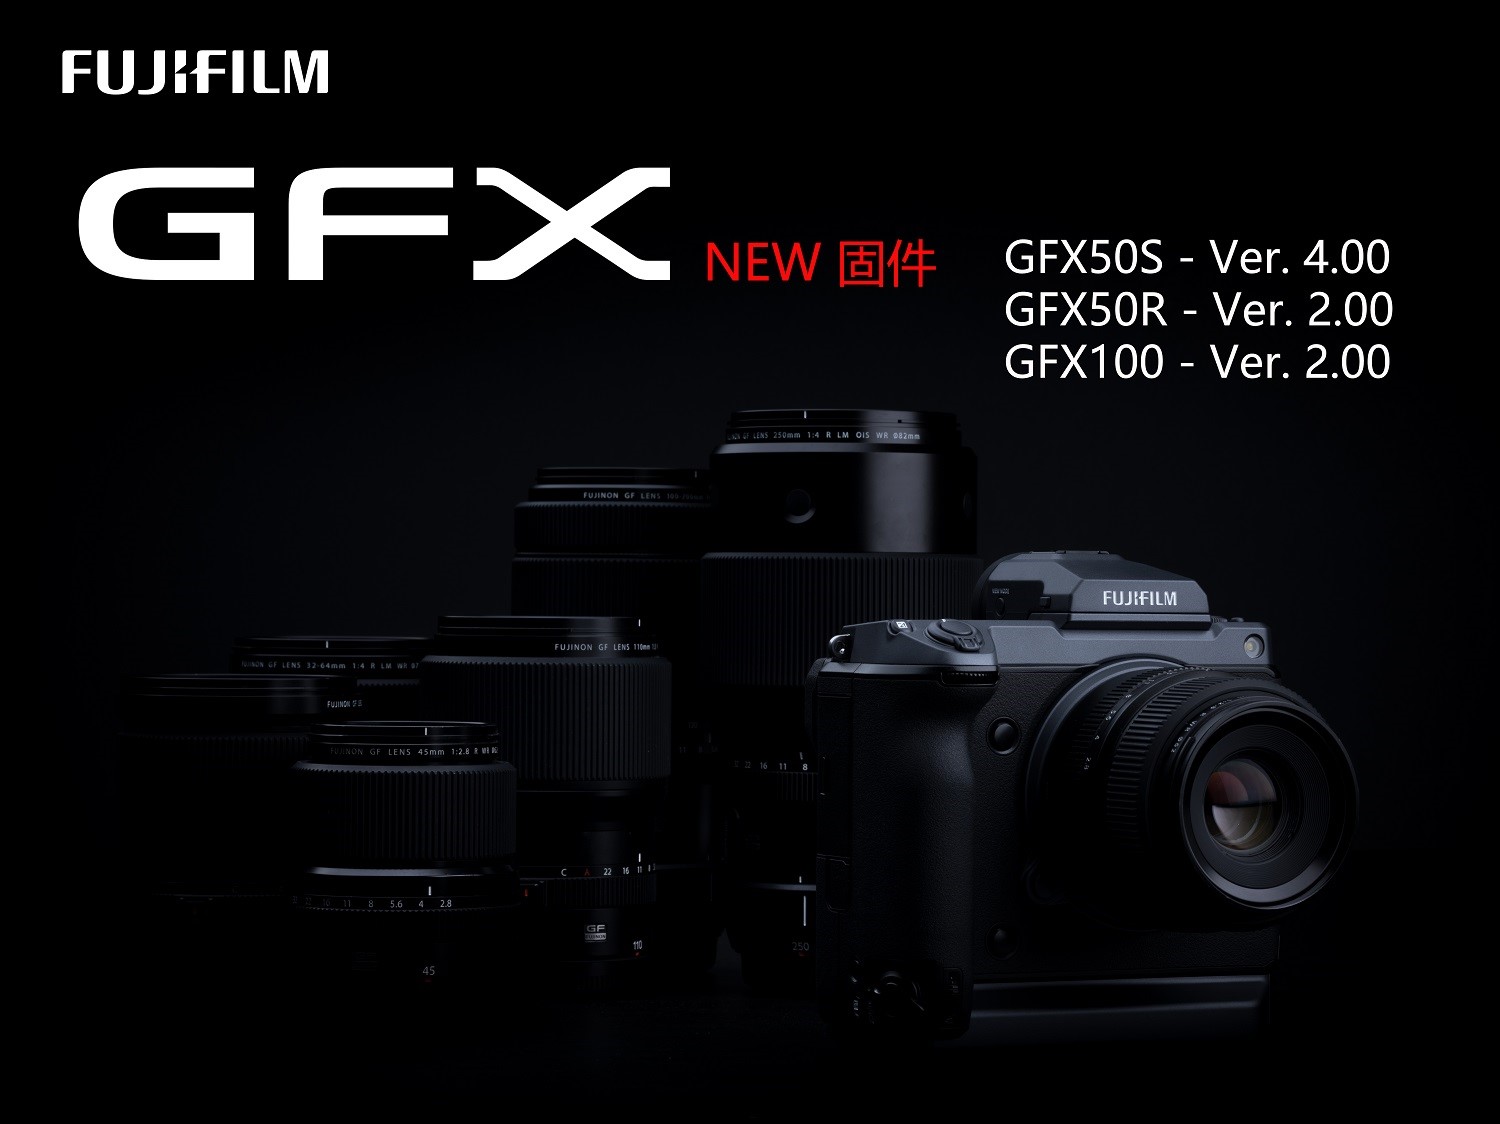 满足专业创意的严苛需求 富士GFX系统发布全新固件升级